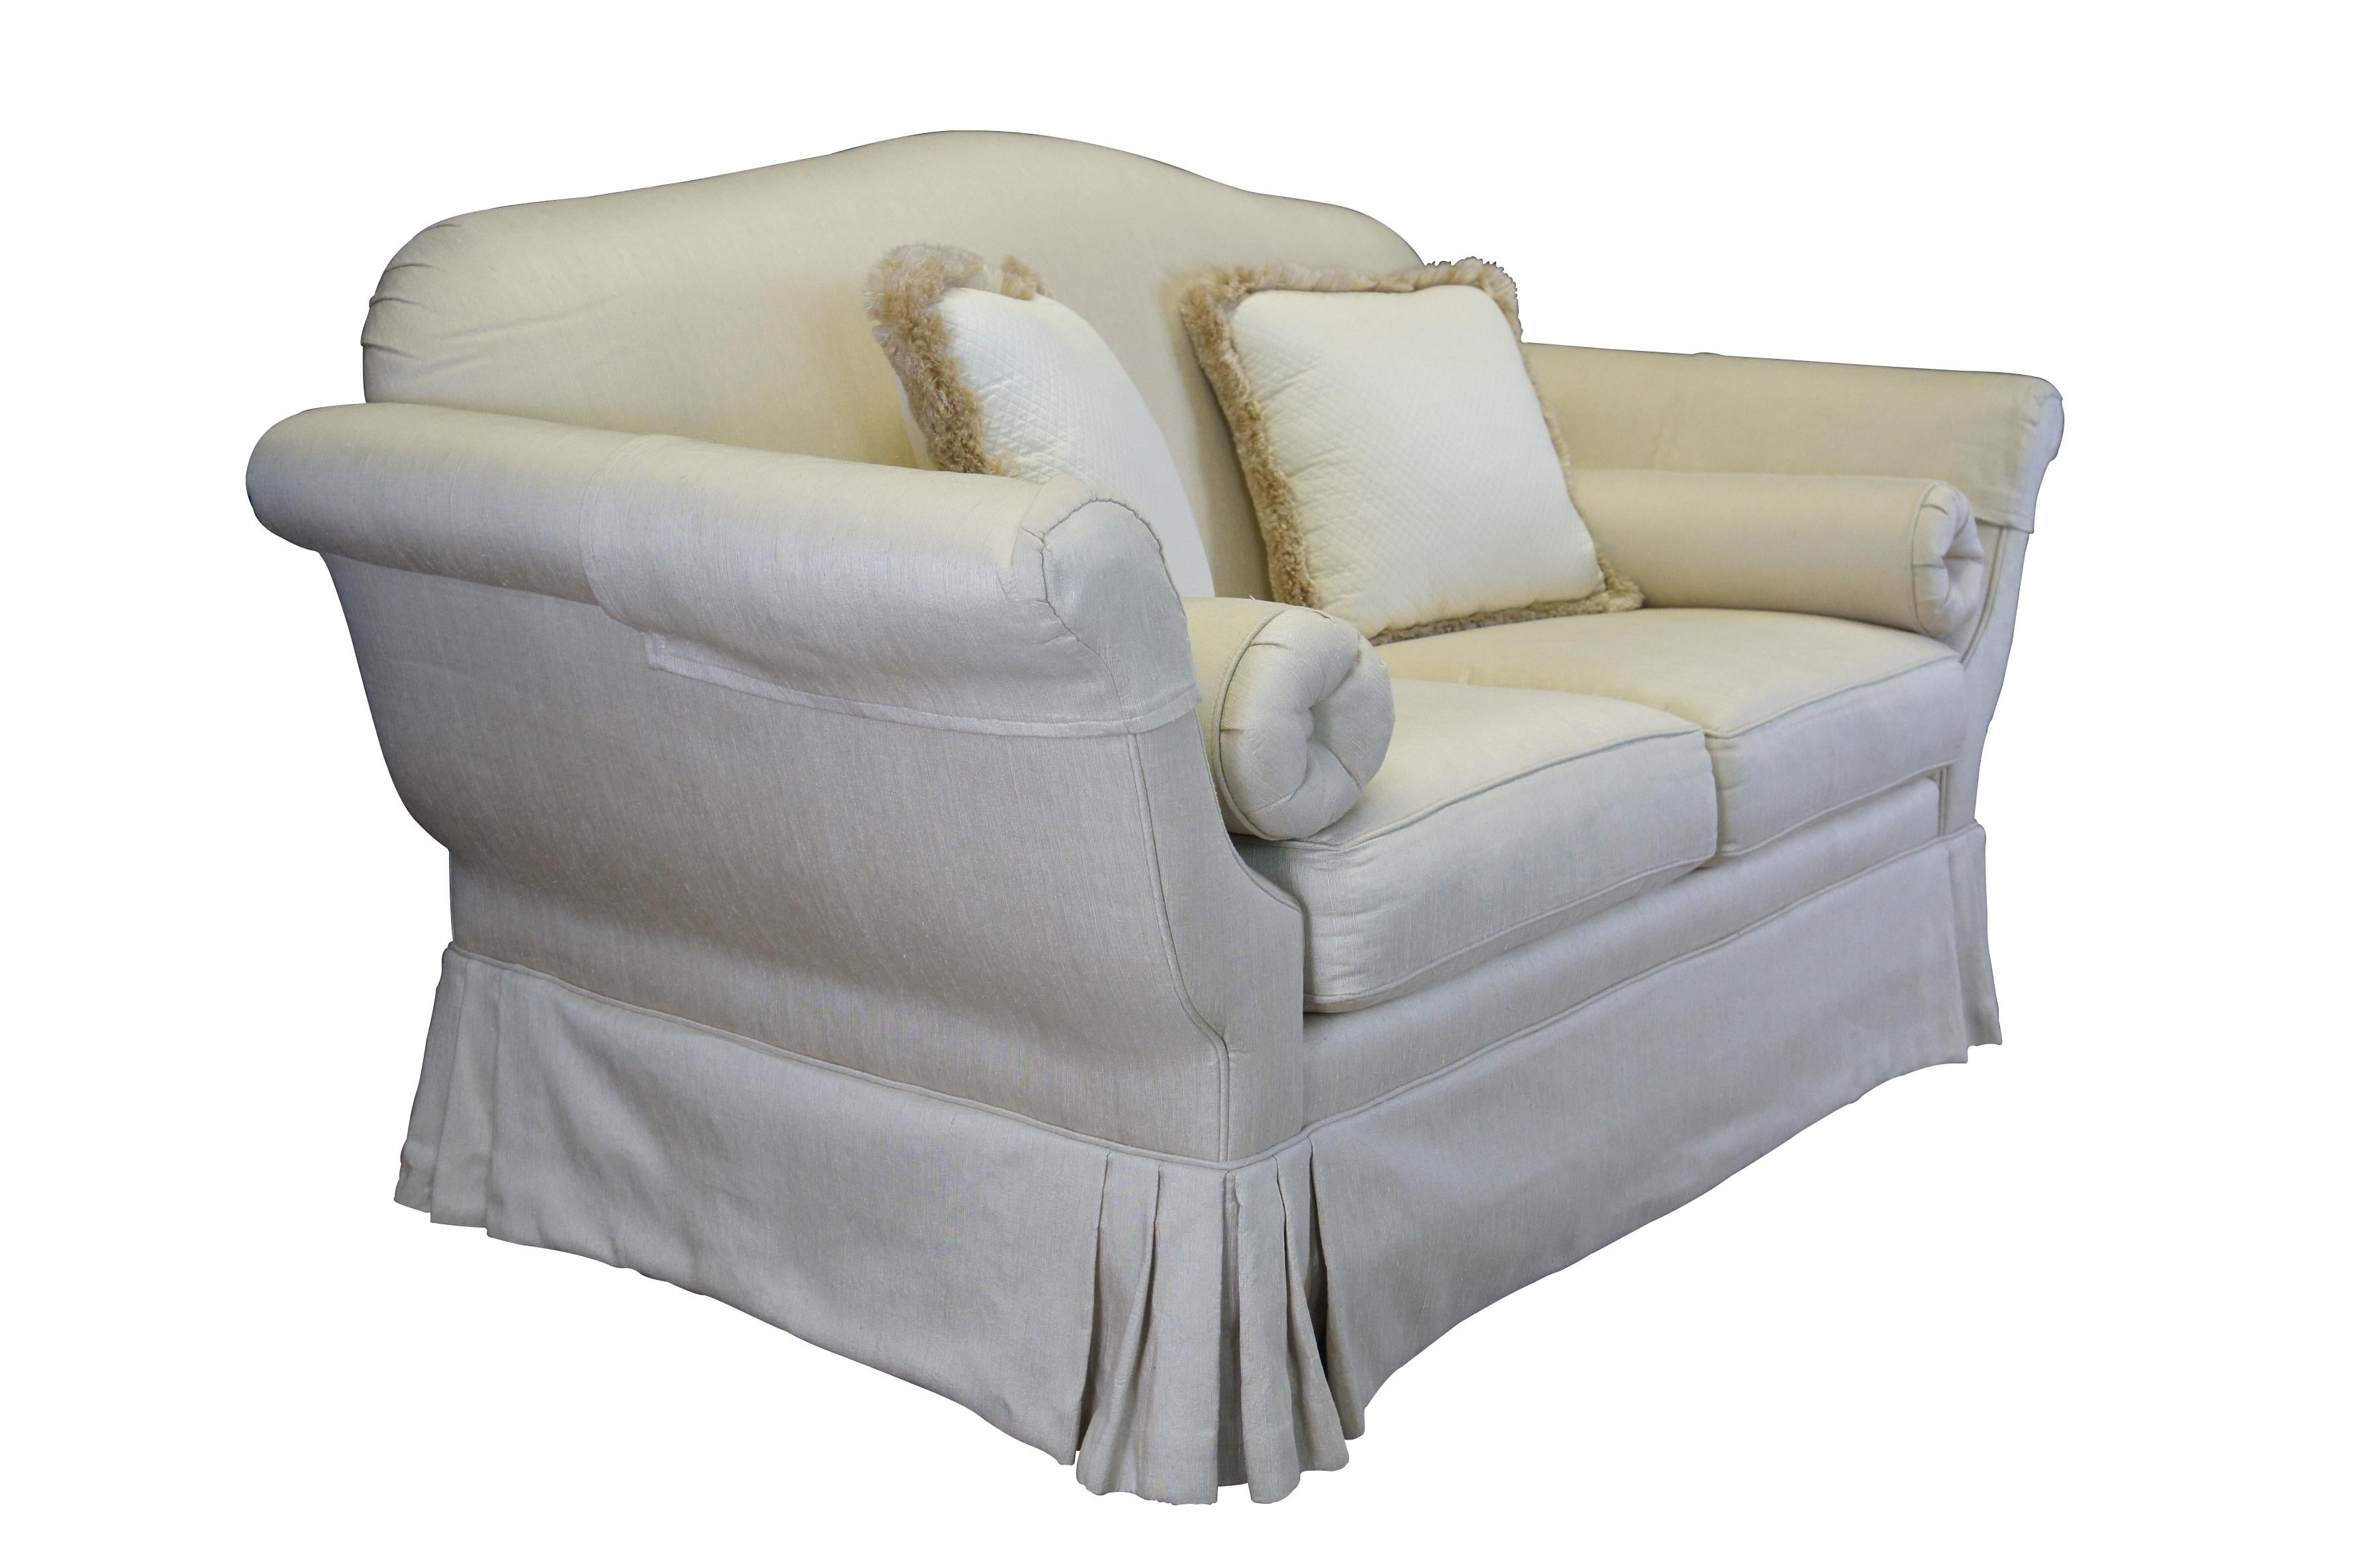 Causeuse / canapé / sofa ou divan vintage en soie garni de duvet présentant un design formel de chaise longue effilée avec de hauts accoudoirs roulés et un dossier arqué sur une base en jupe.  Comprend un traversin et un coussin lombaire.  Blanc